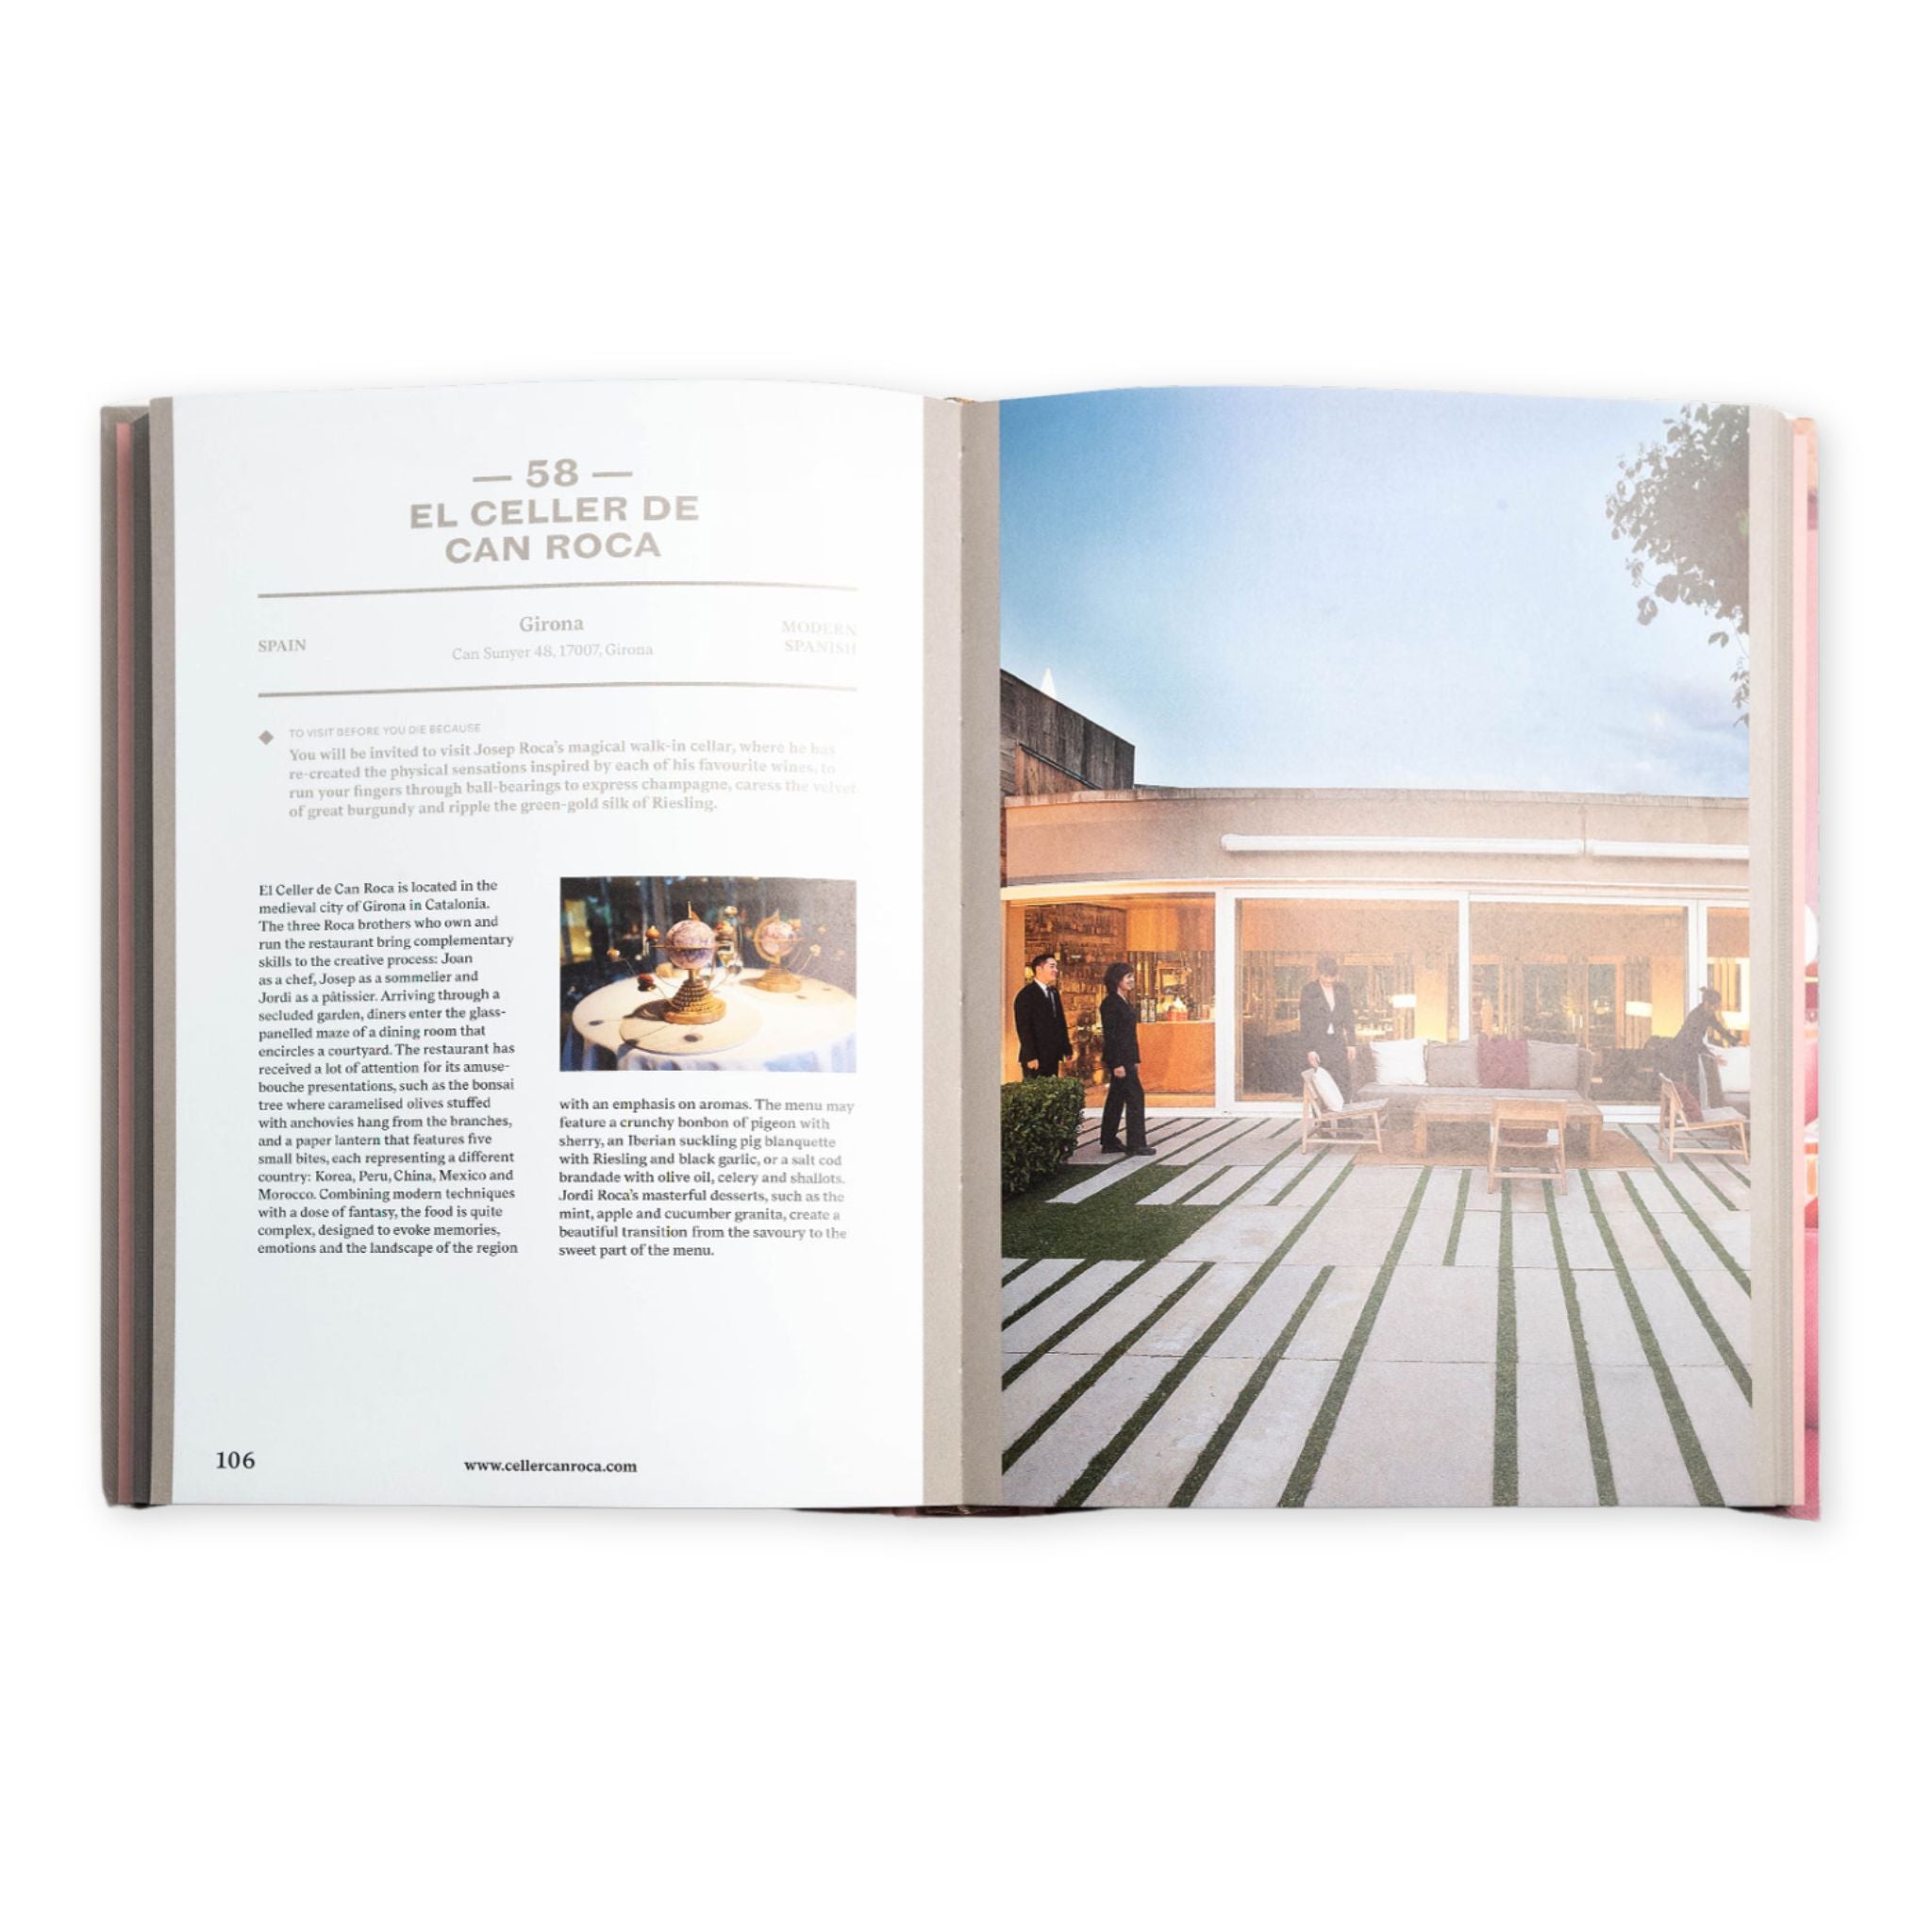 book of 150 best restaurants - El Celler de can roca